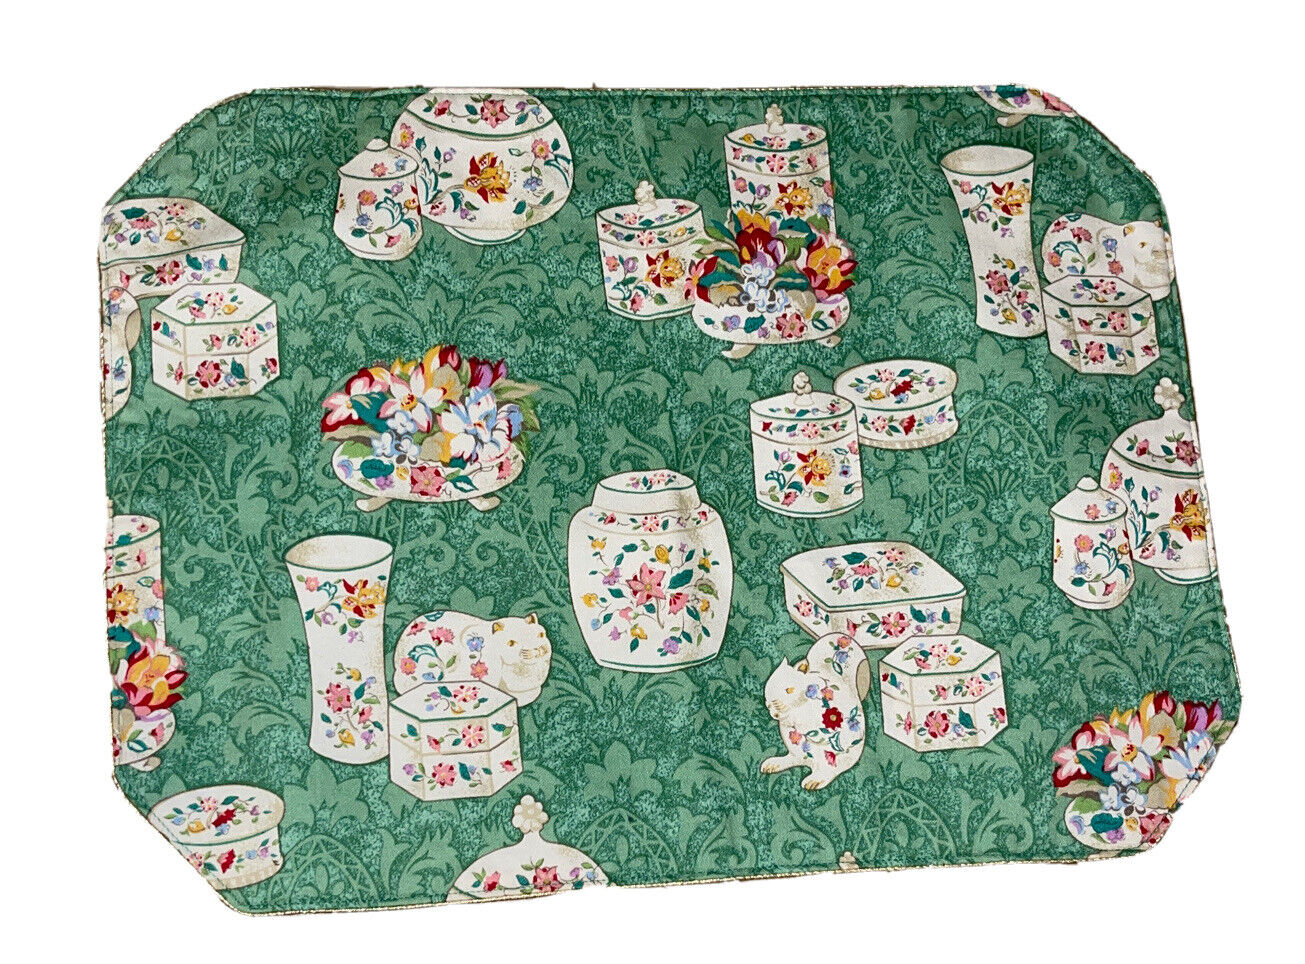 Vintage Minton Placemat Place Mat Mattes Fabric Green 16x12”